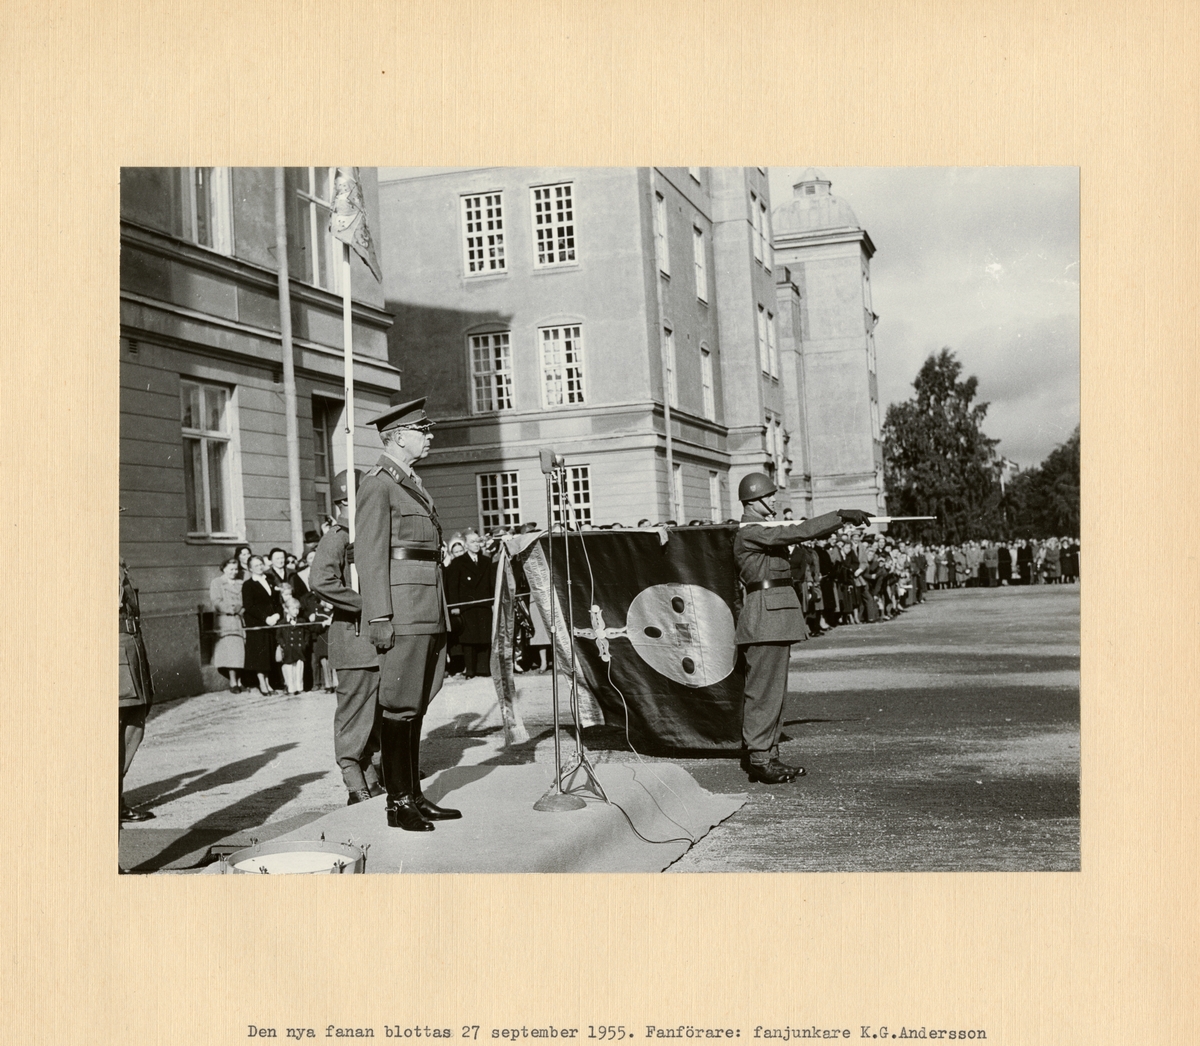 Text i fotoalbum: "Den nya fanan blottas 27 september 1955. Fanförare: fanjunkare K.G. Andersson"